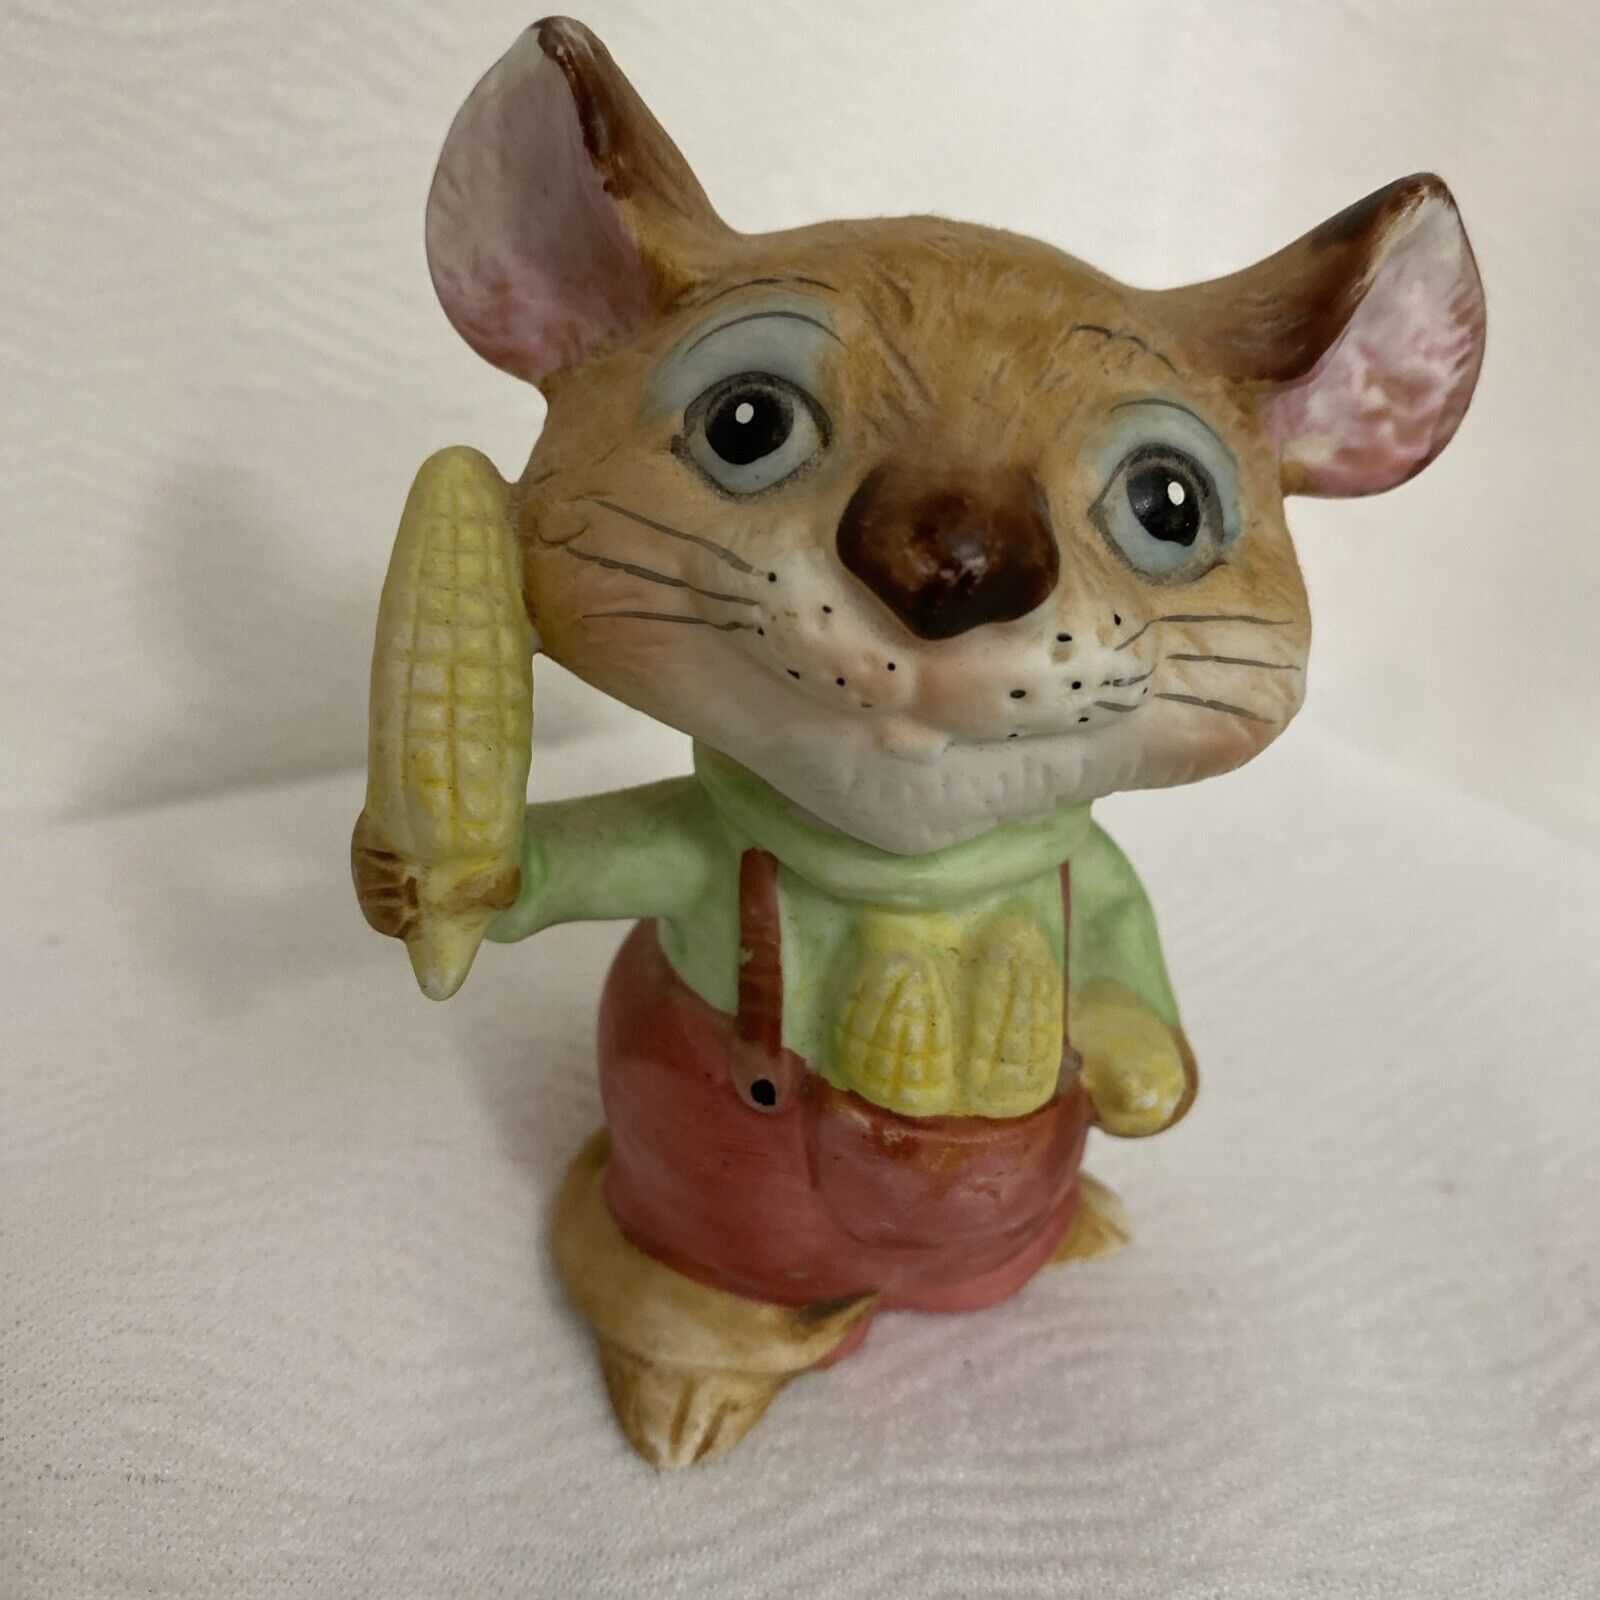 Vintage Homco Harvest Mice Corn Mouse Figurine 5601 Ceramic 4” Tall